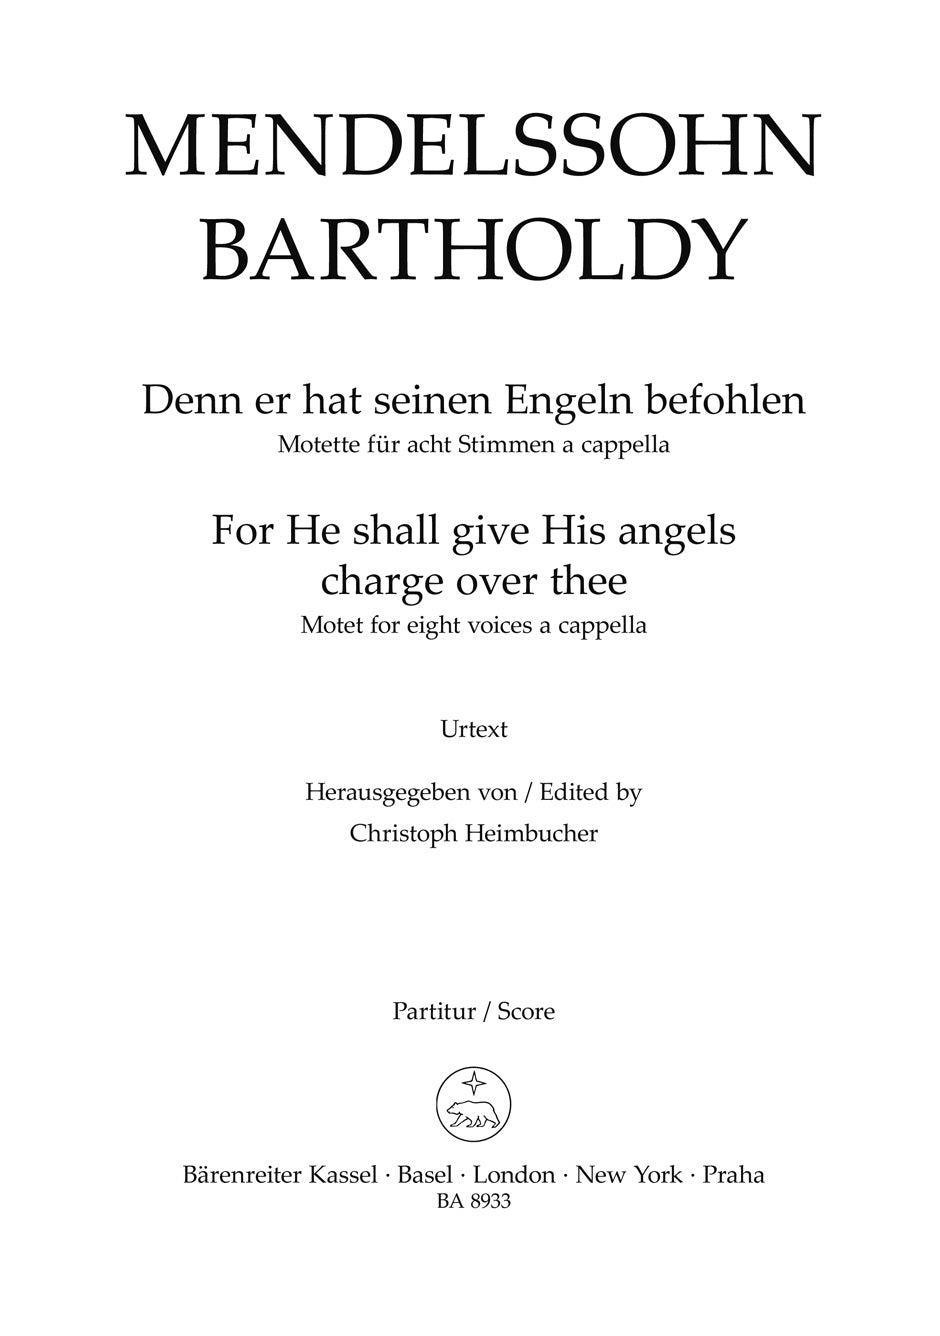 Mendelssohn: Denn er hat seinen Engein befohlen, MWV B 53